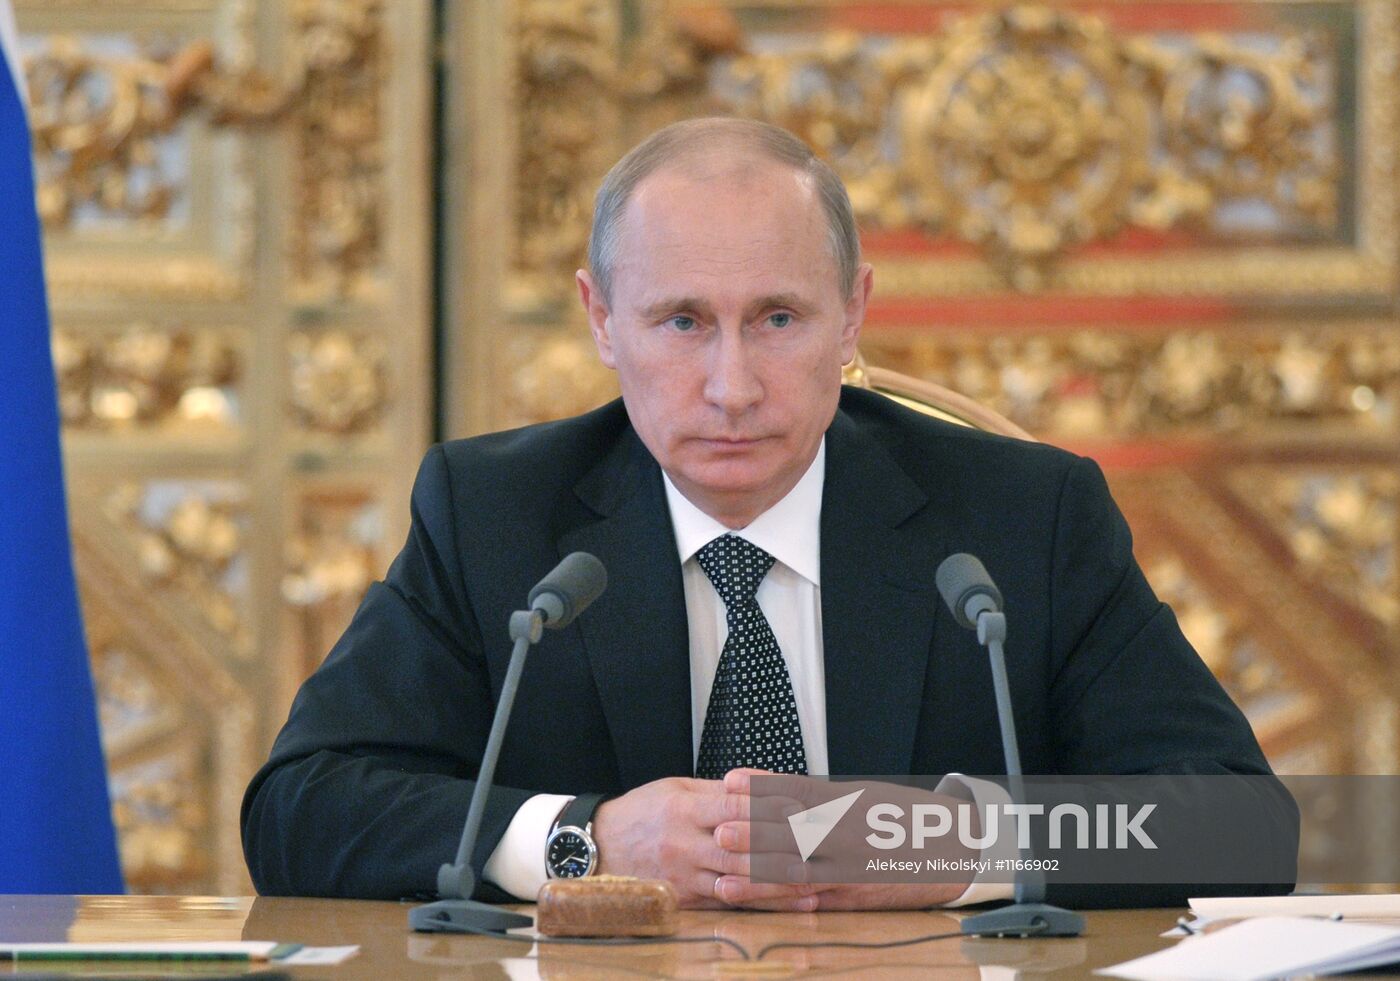 Vladimir Putin unveils 2013-15 Budget Address